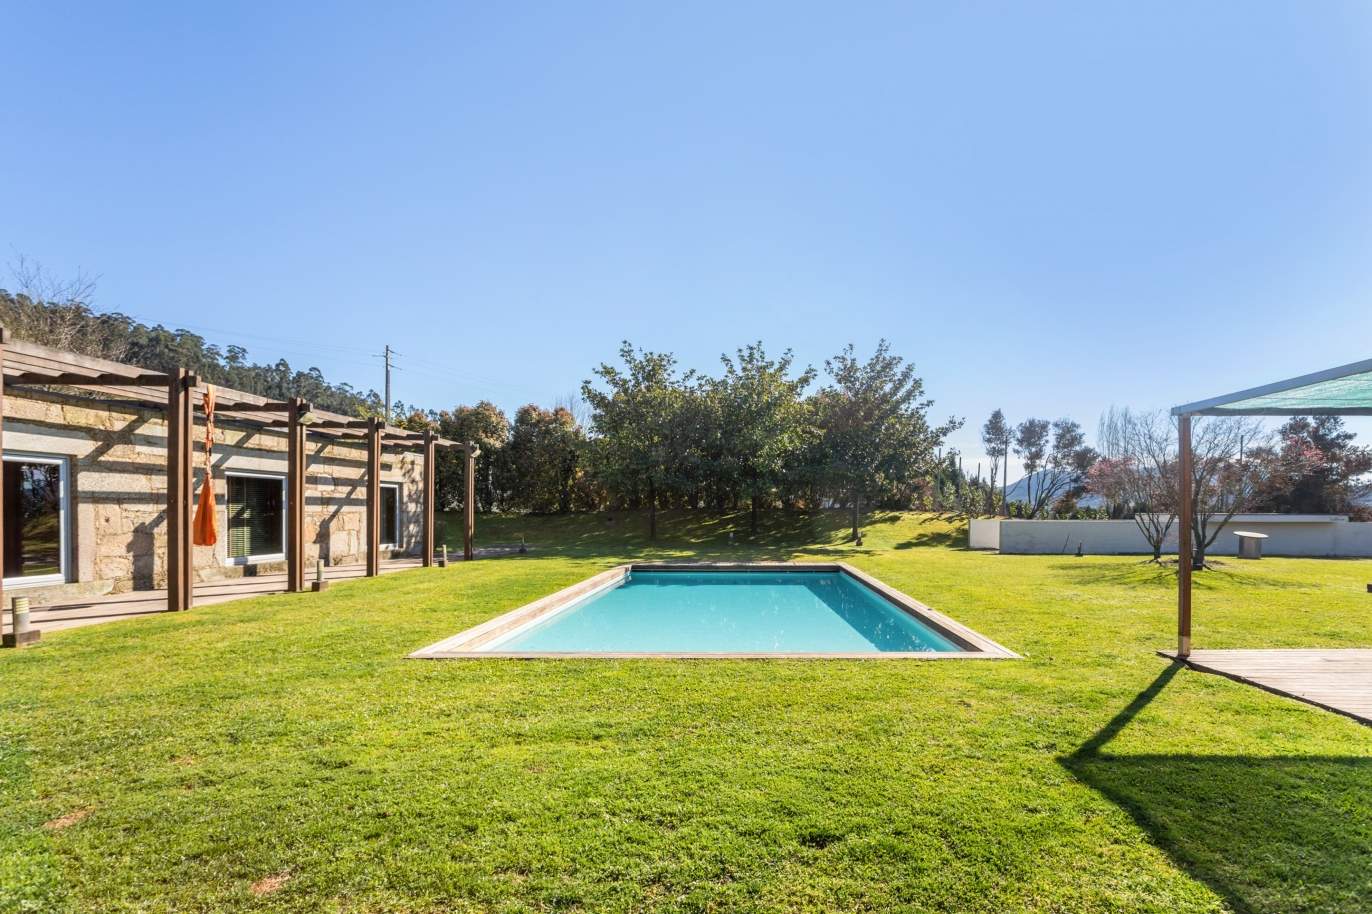 Venda: Casa de Campo contemporânea, com piscina e jardins, Barcelos_166237